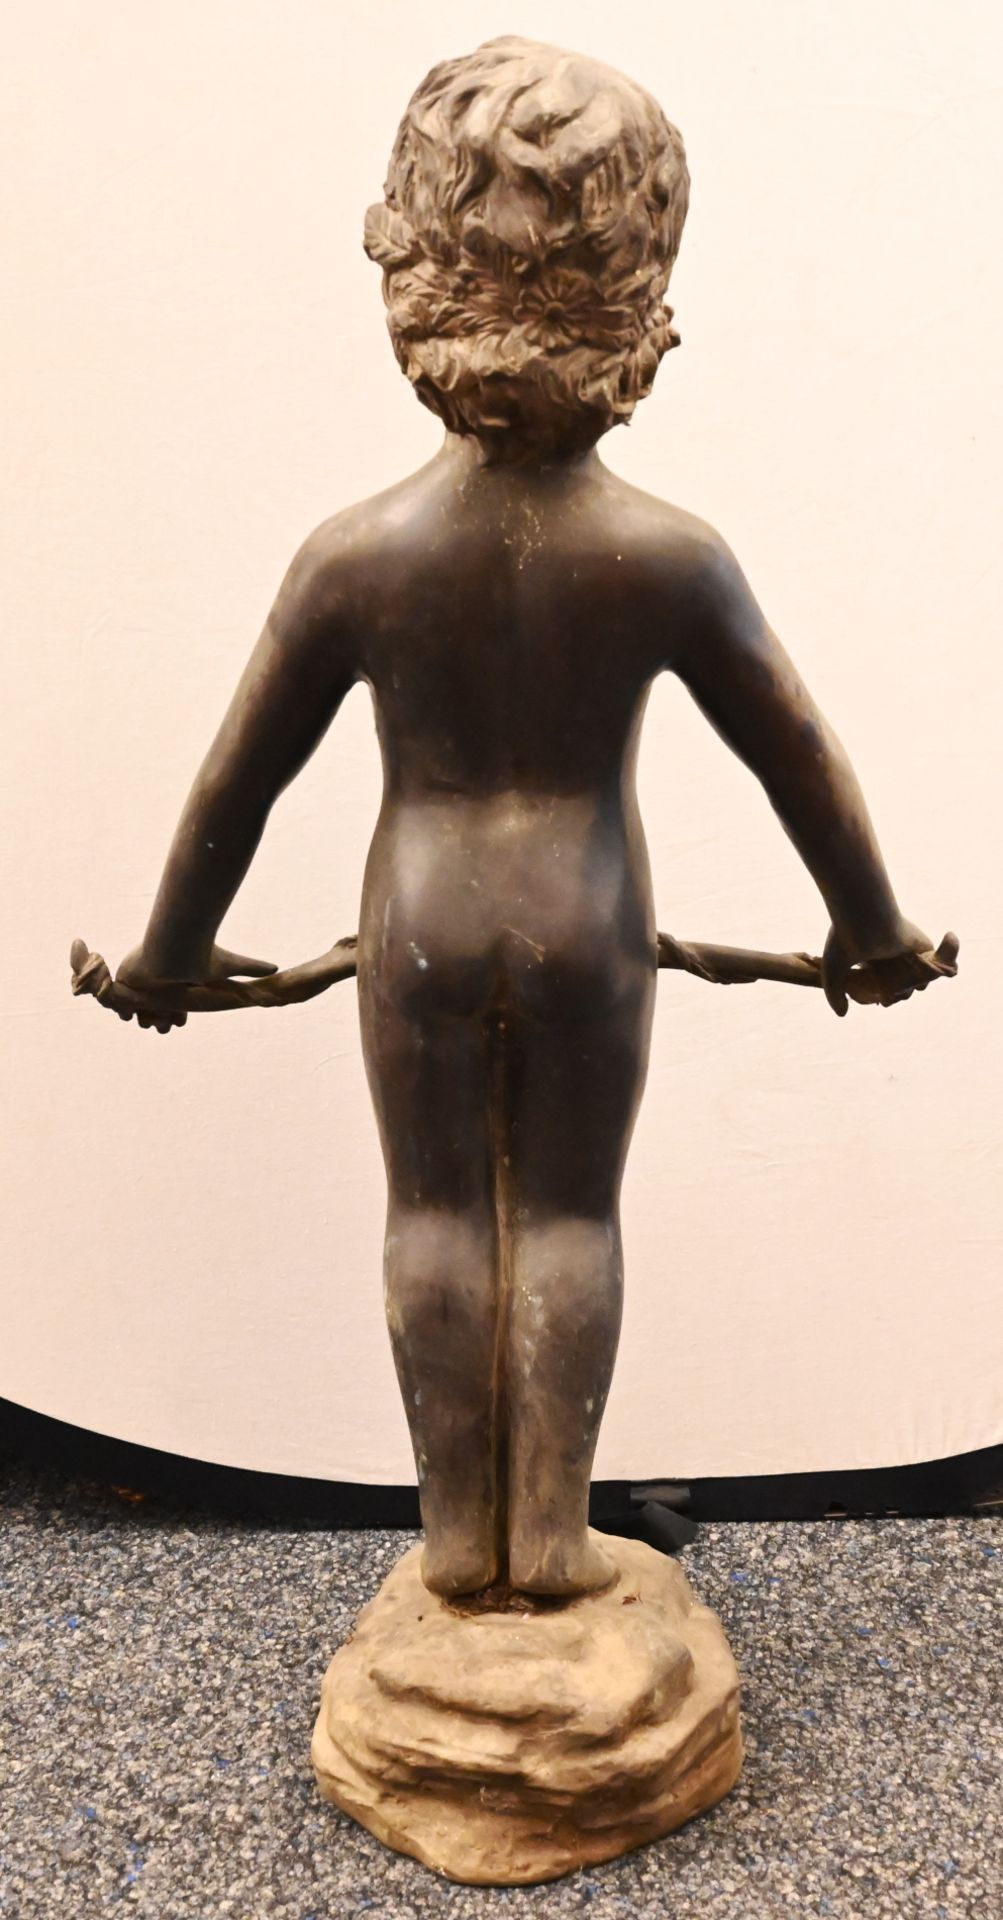 1 Gartenfigur Metall wohl Bronze "Amor mit Bogen", auf Terrainsockel H ca. 92cm, min. besch., berieb - Bild 4 aus 4